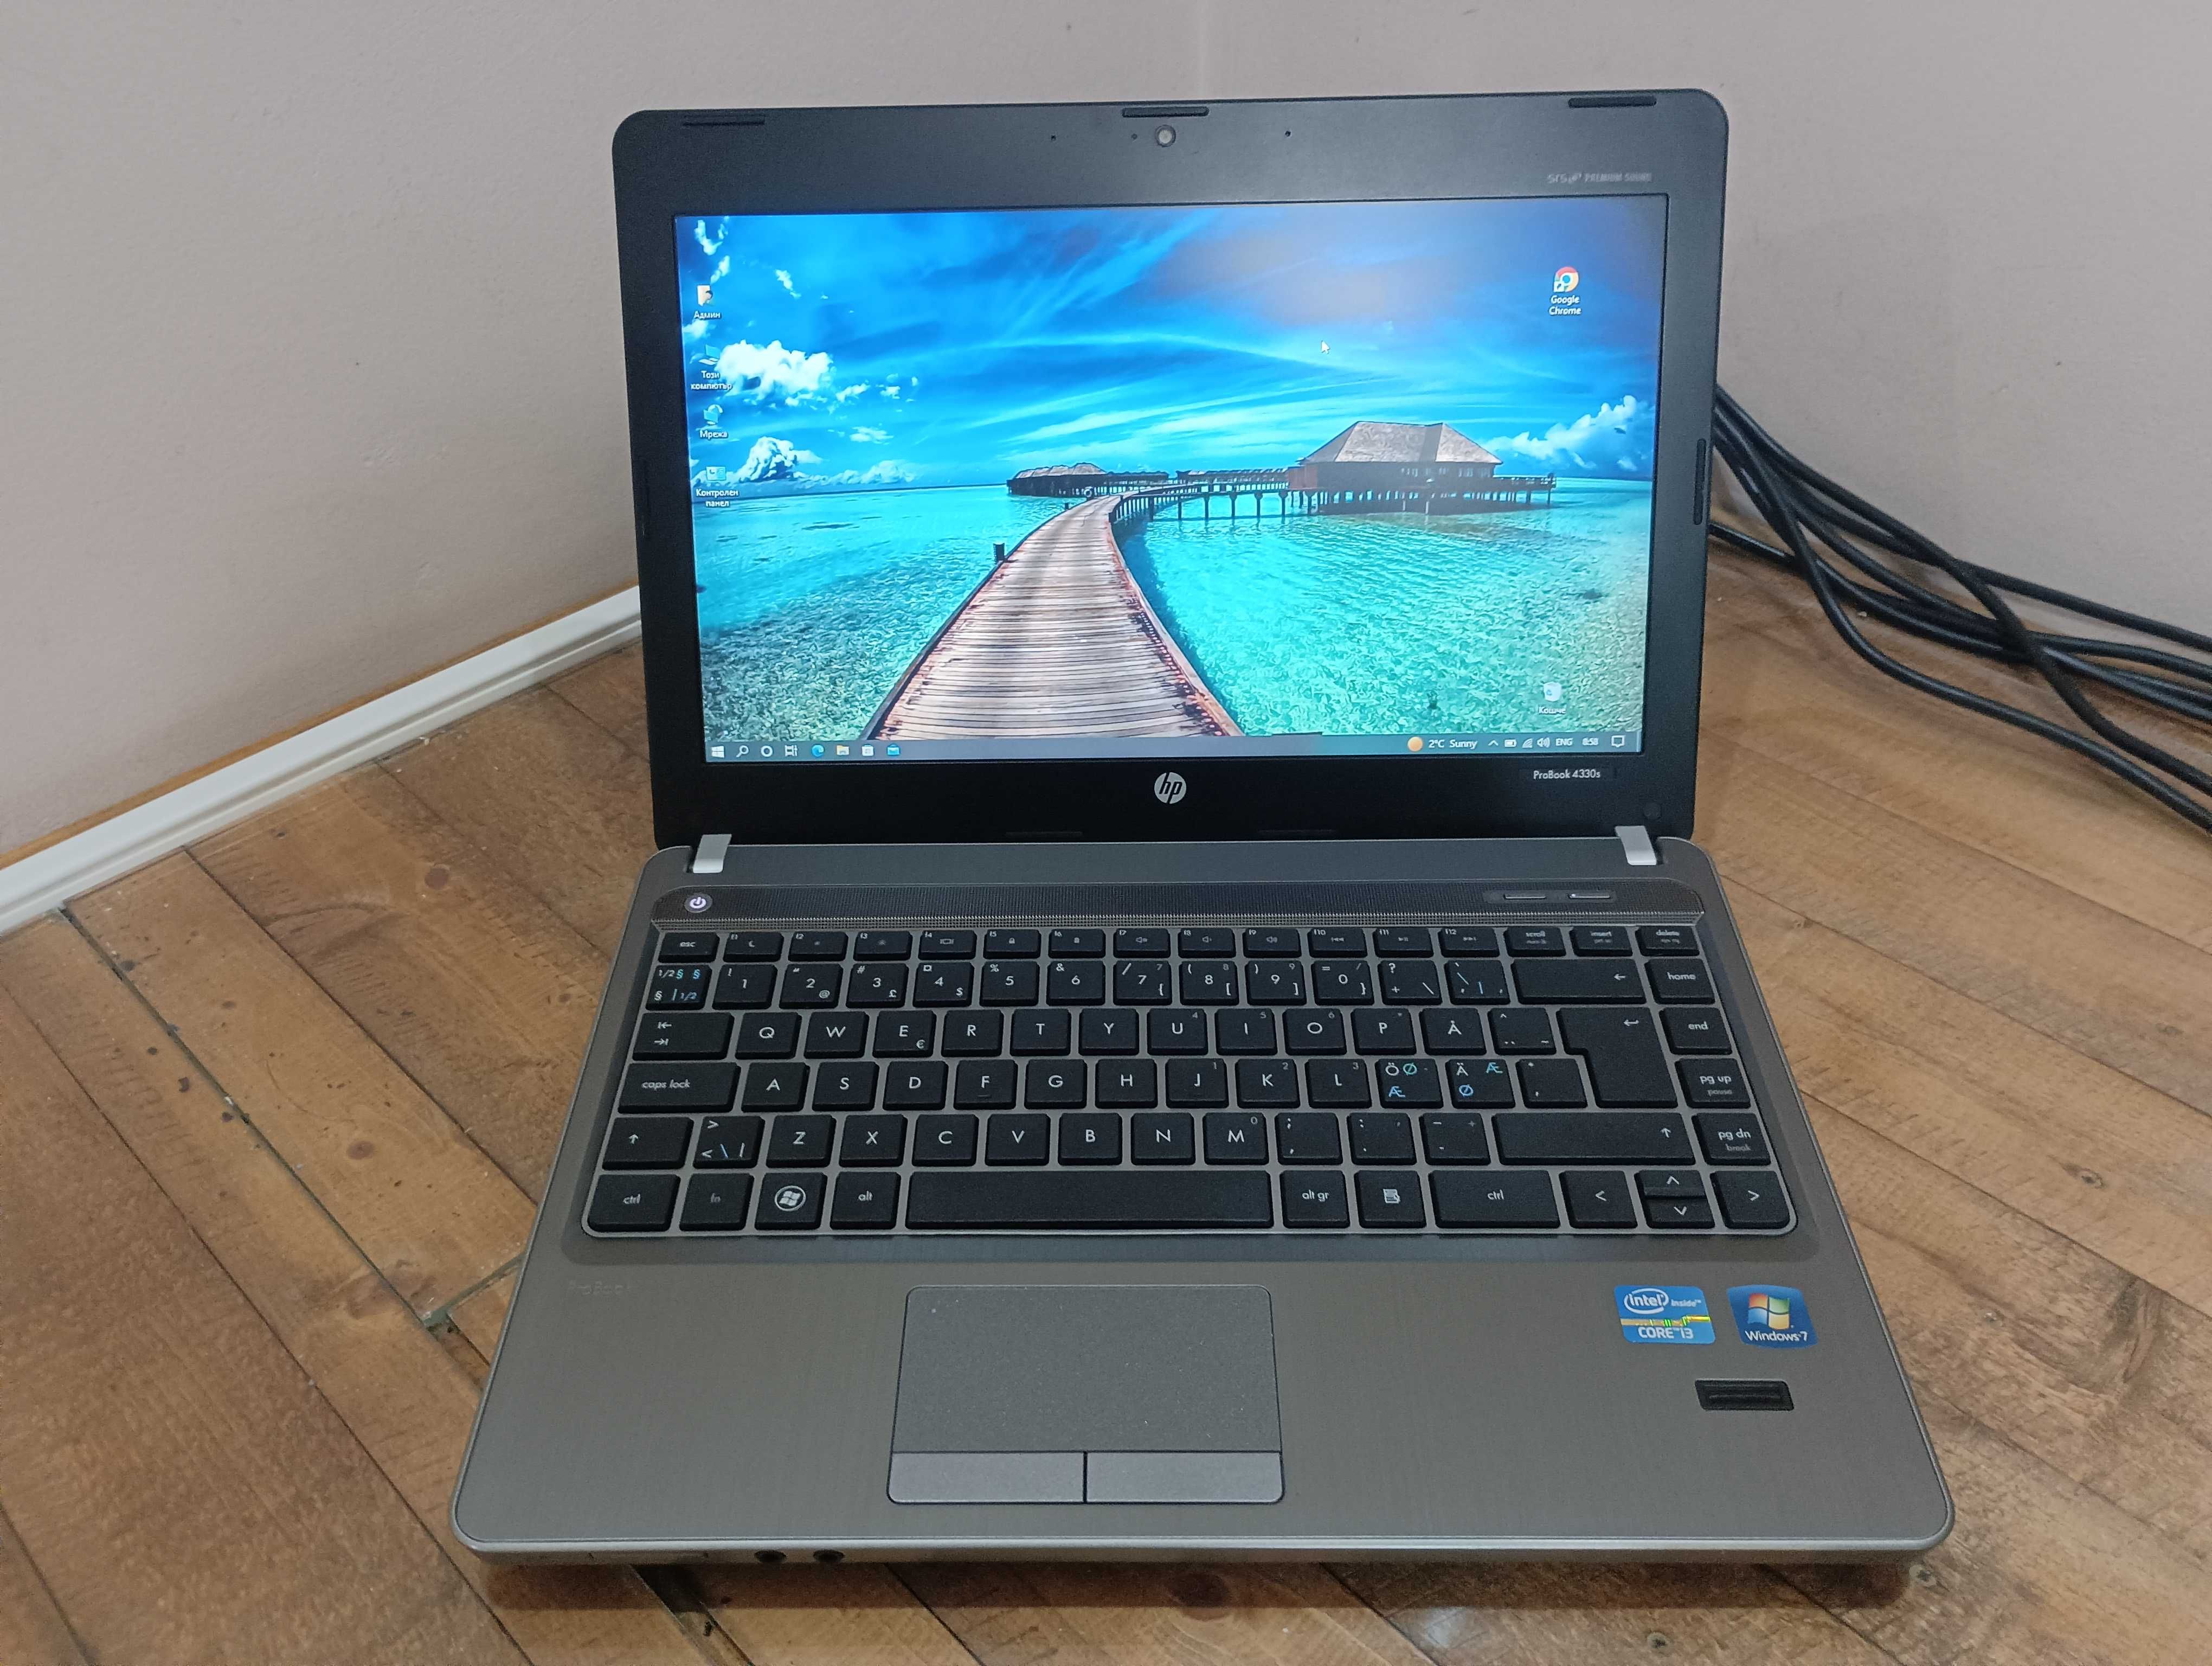 Лаптоп HP ProBook 4330s